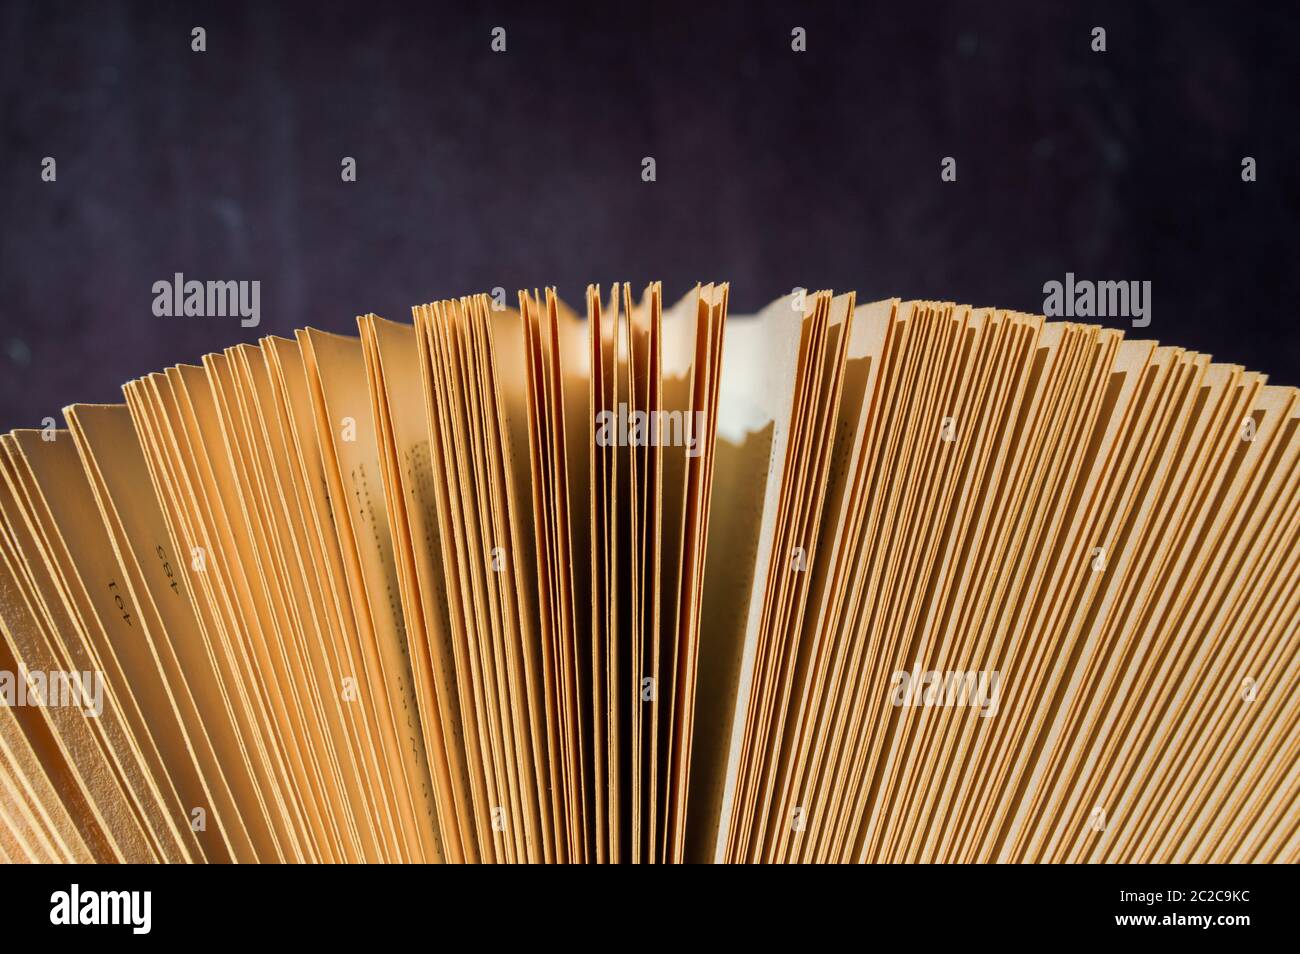 Primer plano de un libro con páginas de papel marrón sobre un fondo púrpura con luz cálida Foto de stock